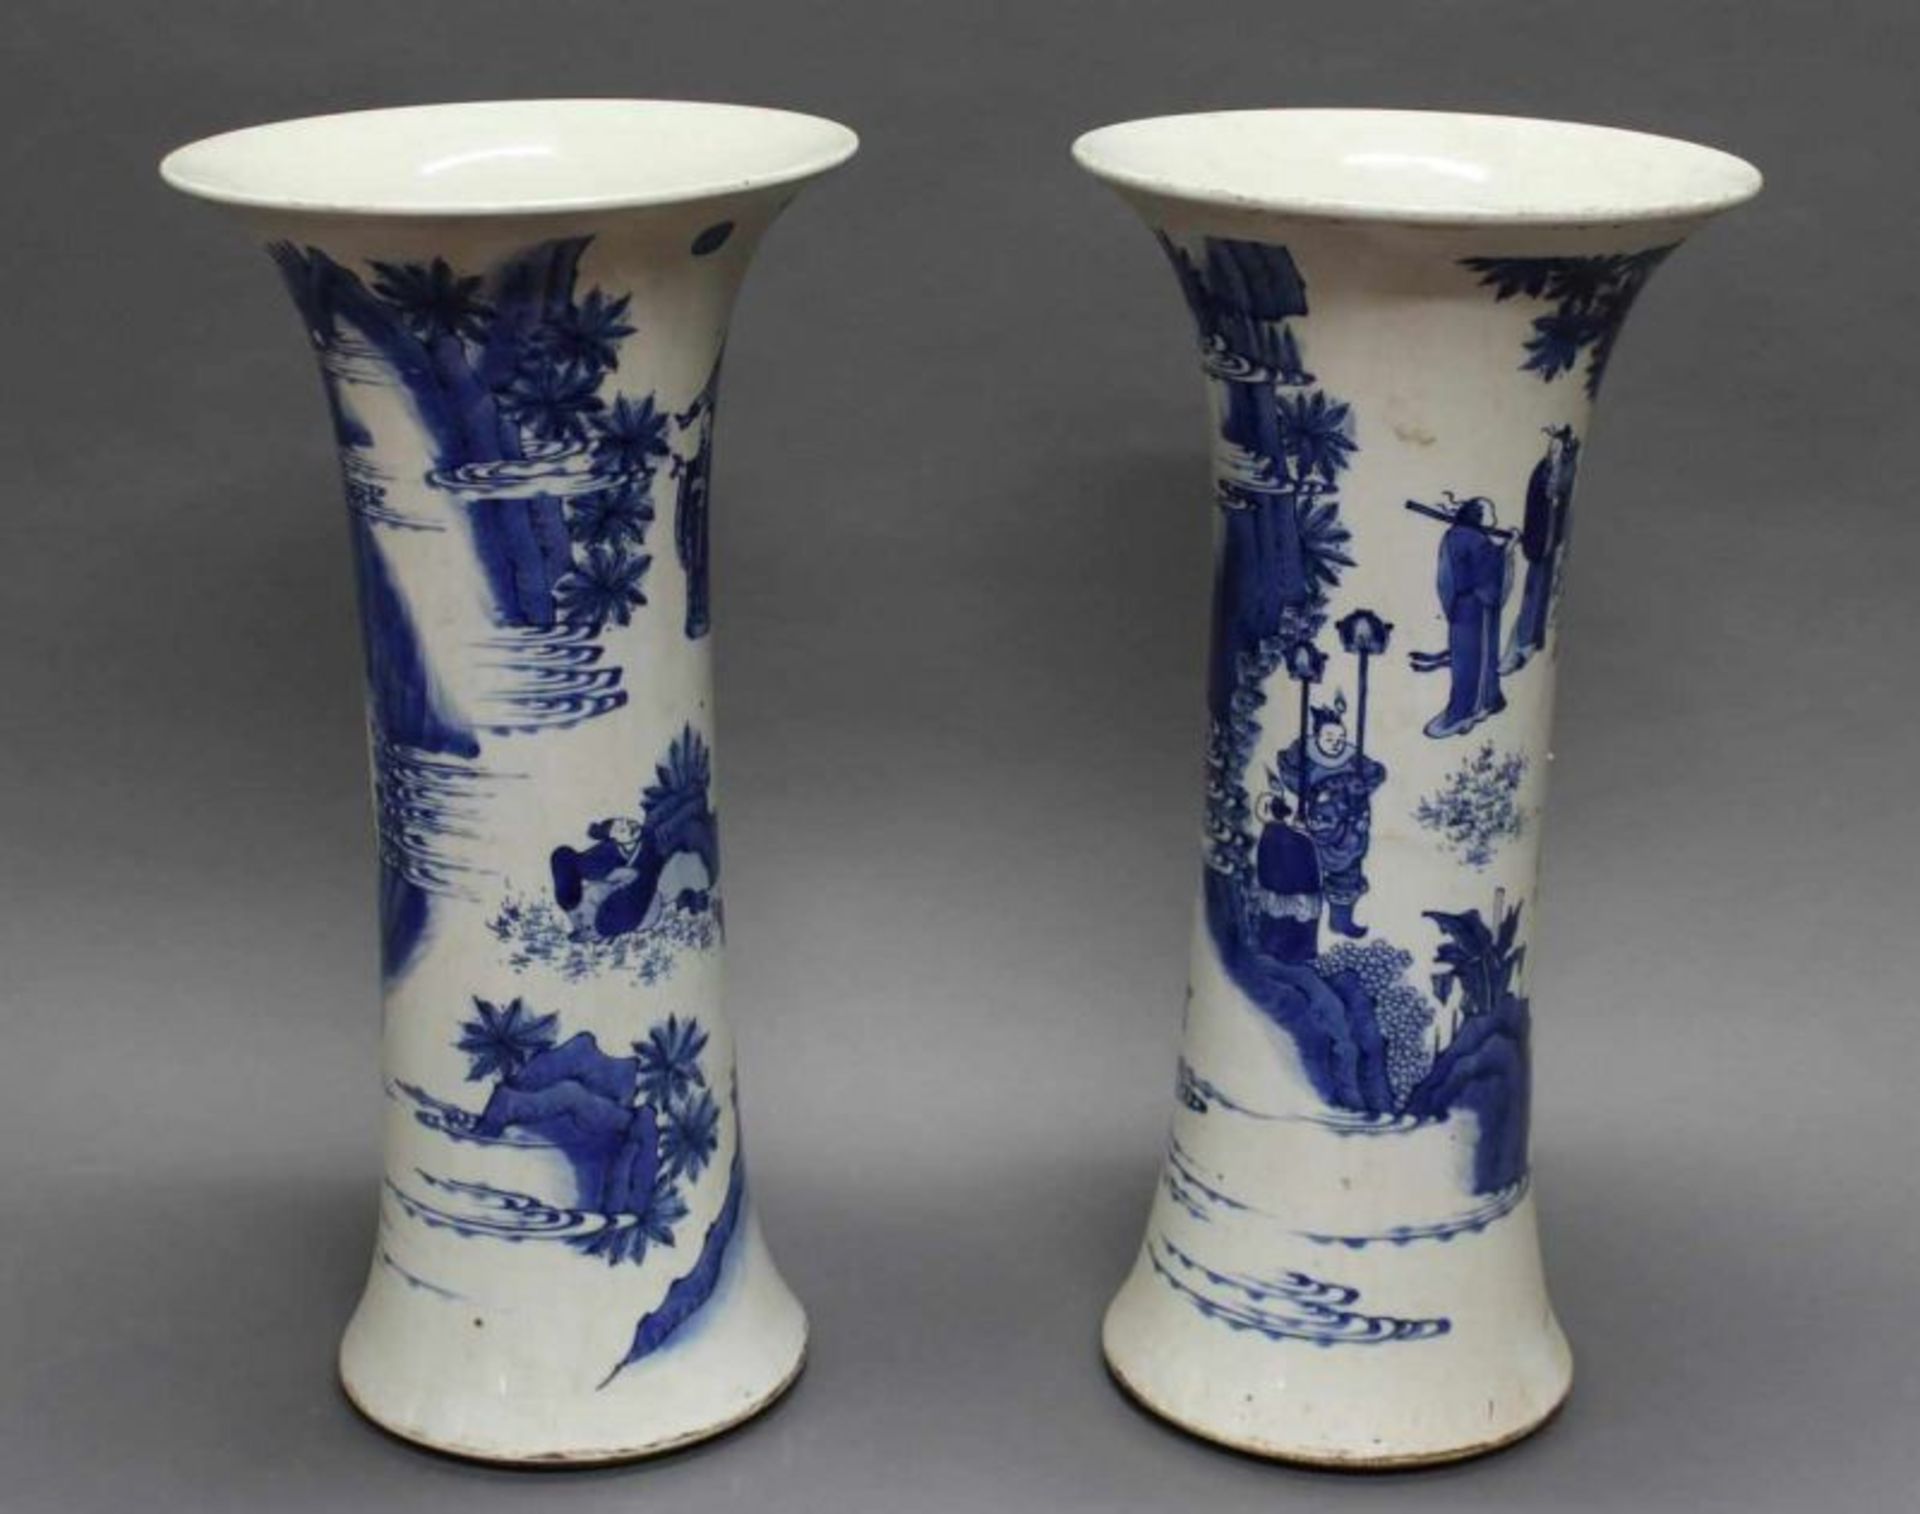 Paar großer Flötenvasen, China, 20. Jh., Porzellan, blaue Personen- und Landschaftsdarstellungen, 48